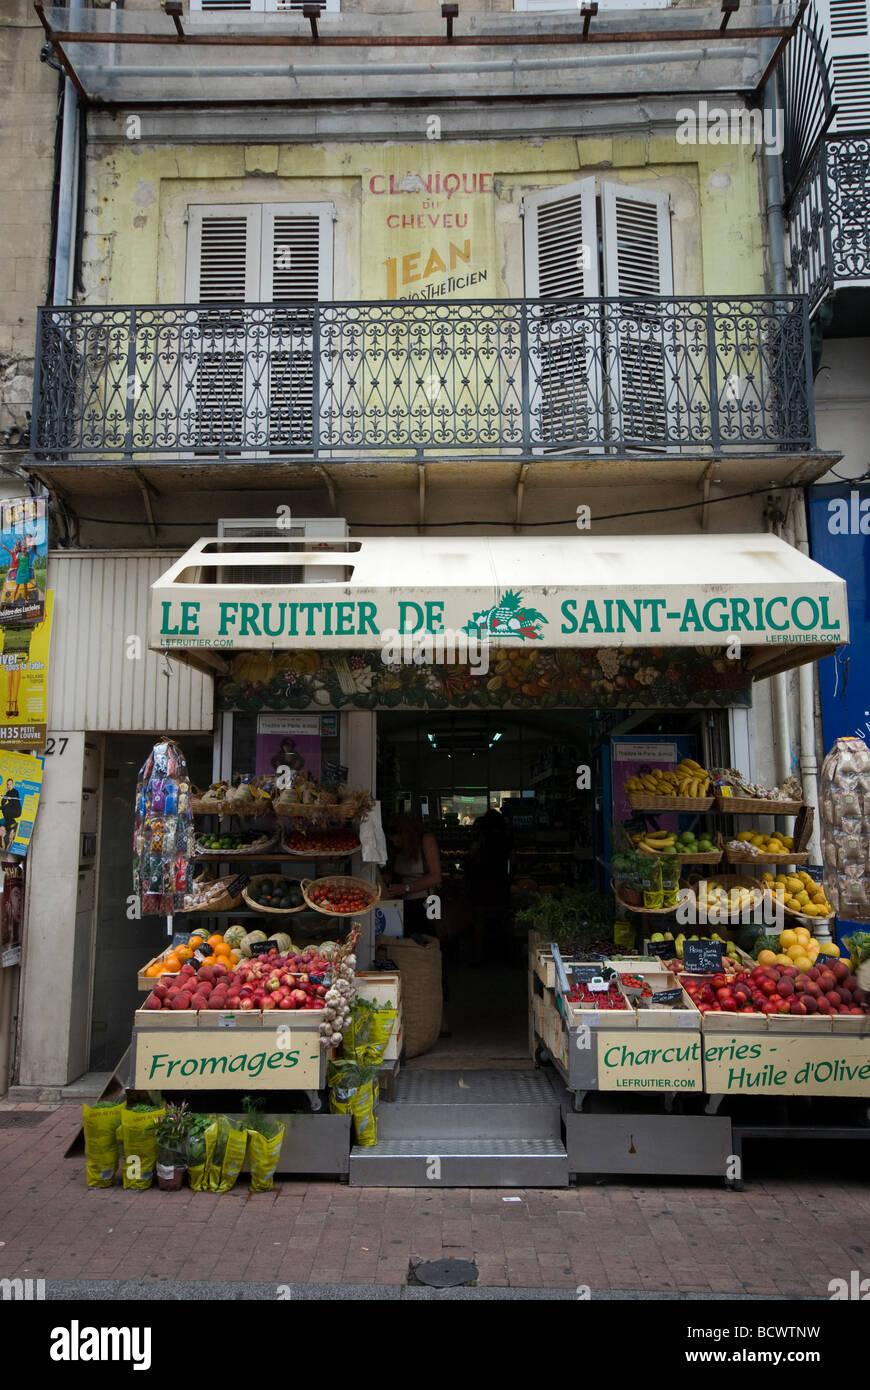 Fruit seller in Avignon, France Stock Photo